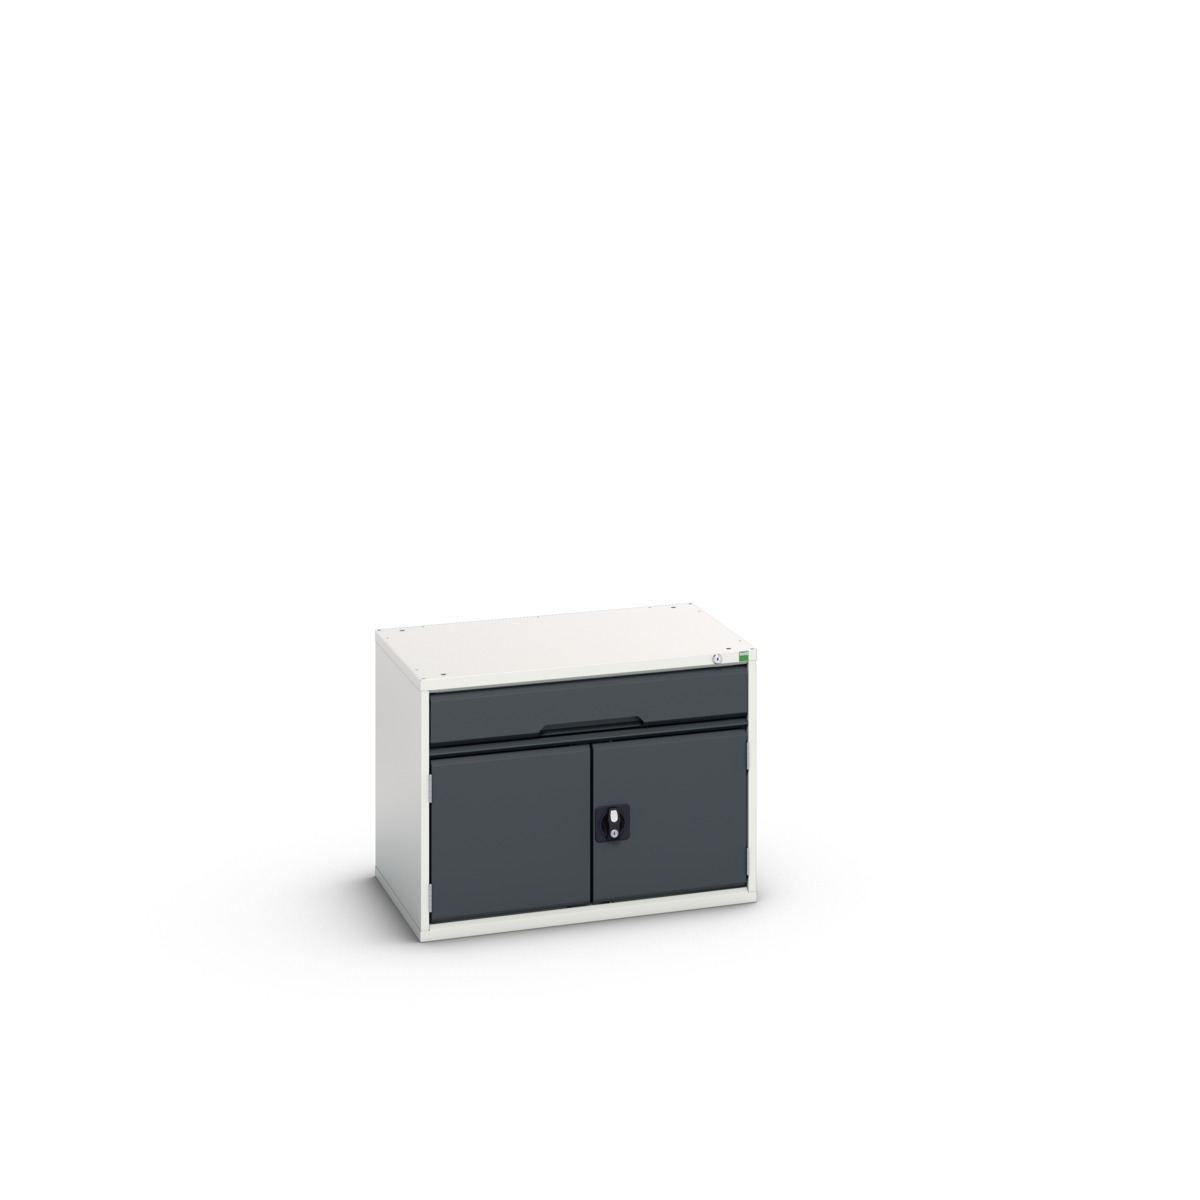 16925106.19 - verso drawer-door cabinet